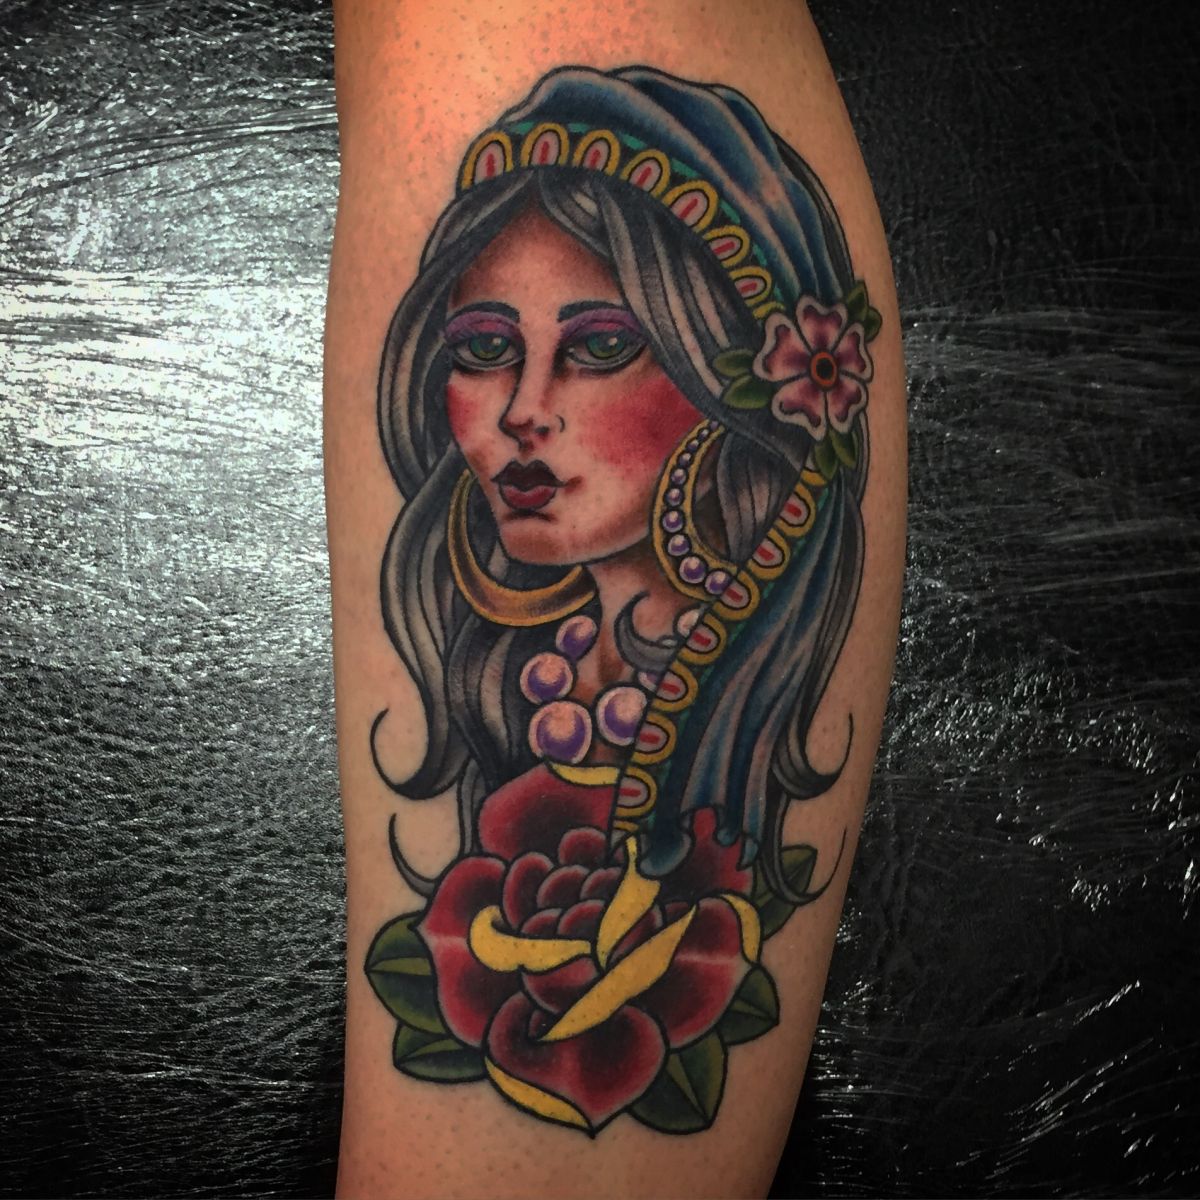 Gypsy girl tattoo